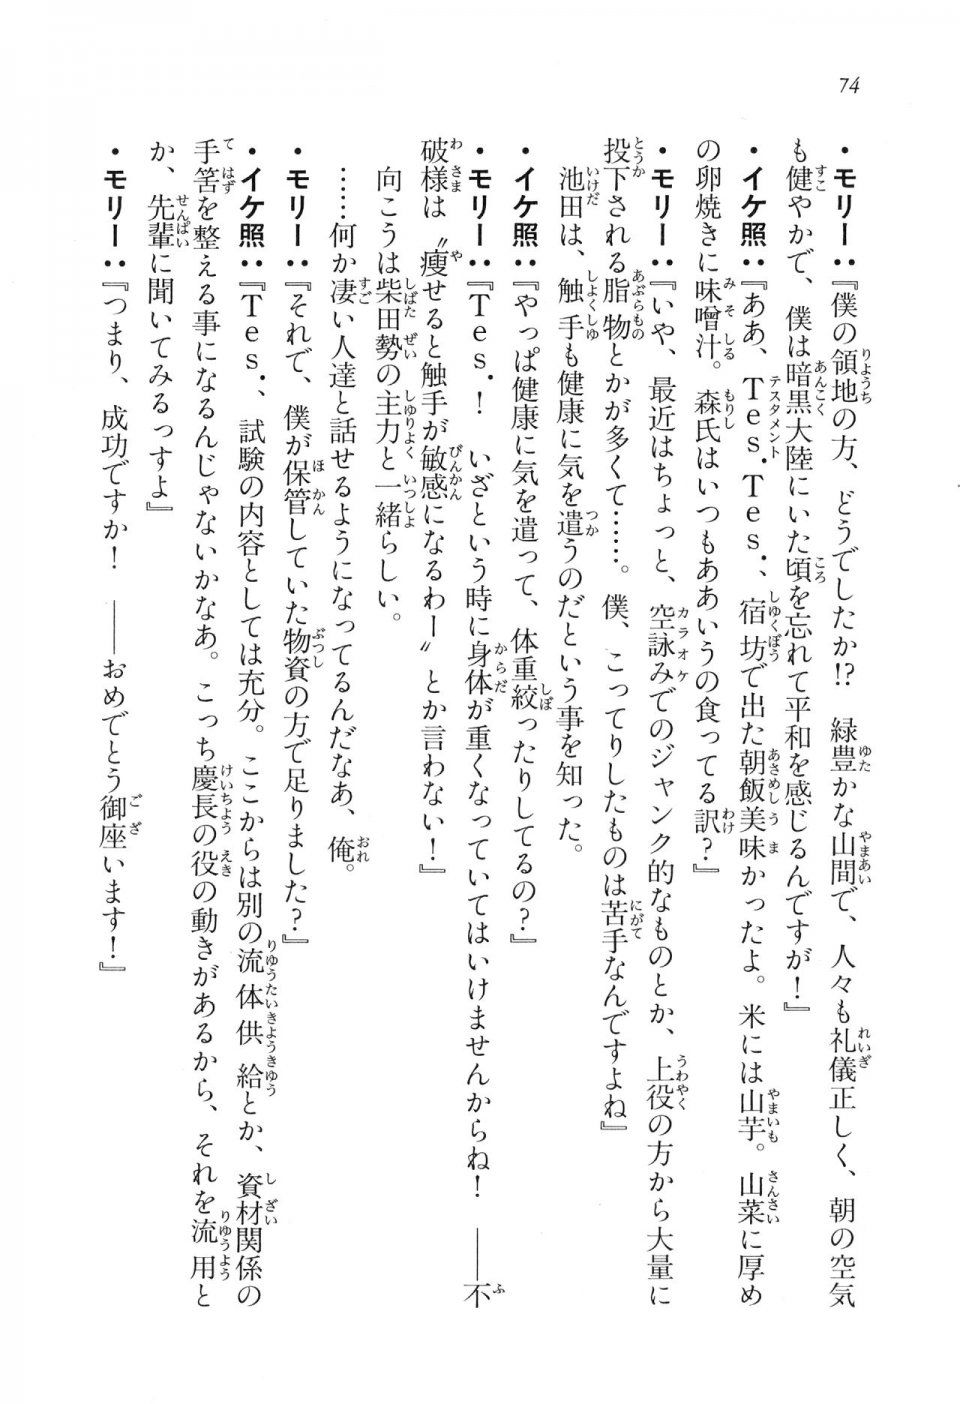 Kyoukai Senjou no Horizon LN Vol 16(7A) - Photo #74